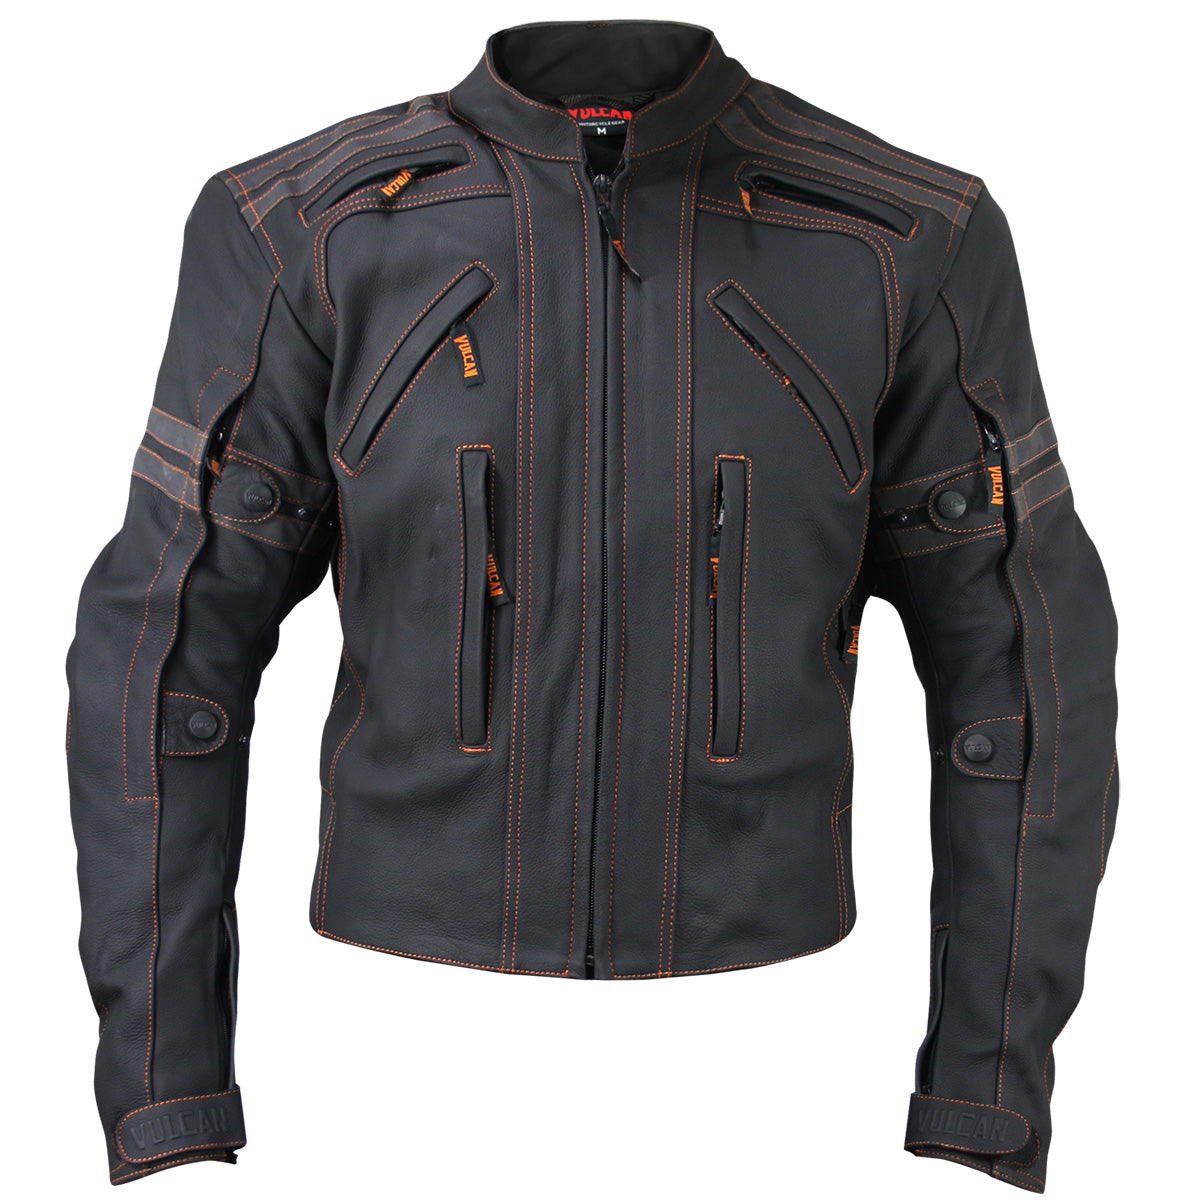 Байкеры цена. Vulcan VTZ-910 Street Motorcycle Jacket. Vulcan Motorcycle Gear куртка. Куртка Xelement байкерская. Vtz910 Vulcan VTZ.